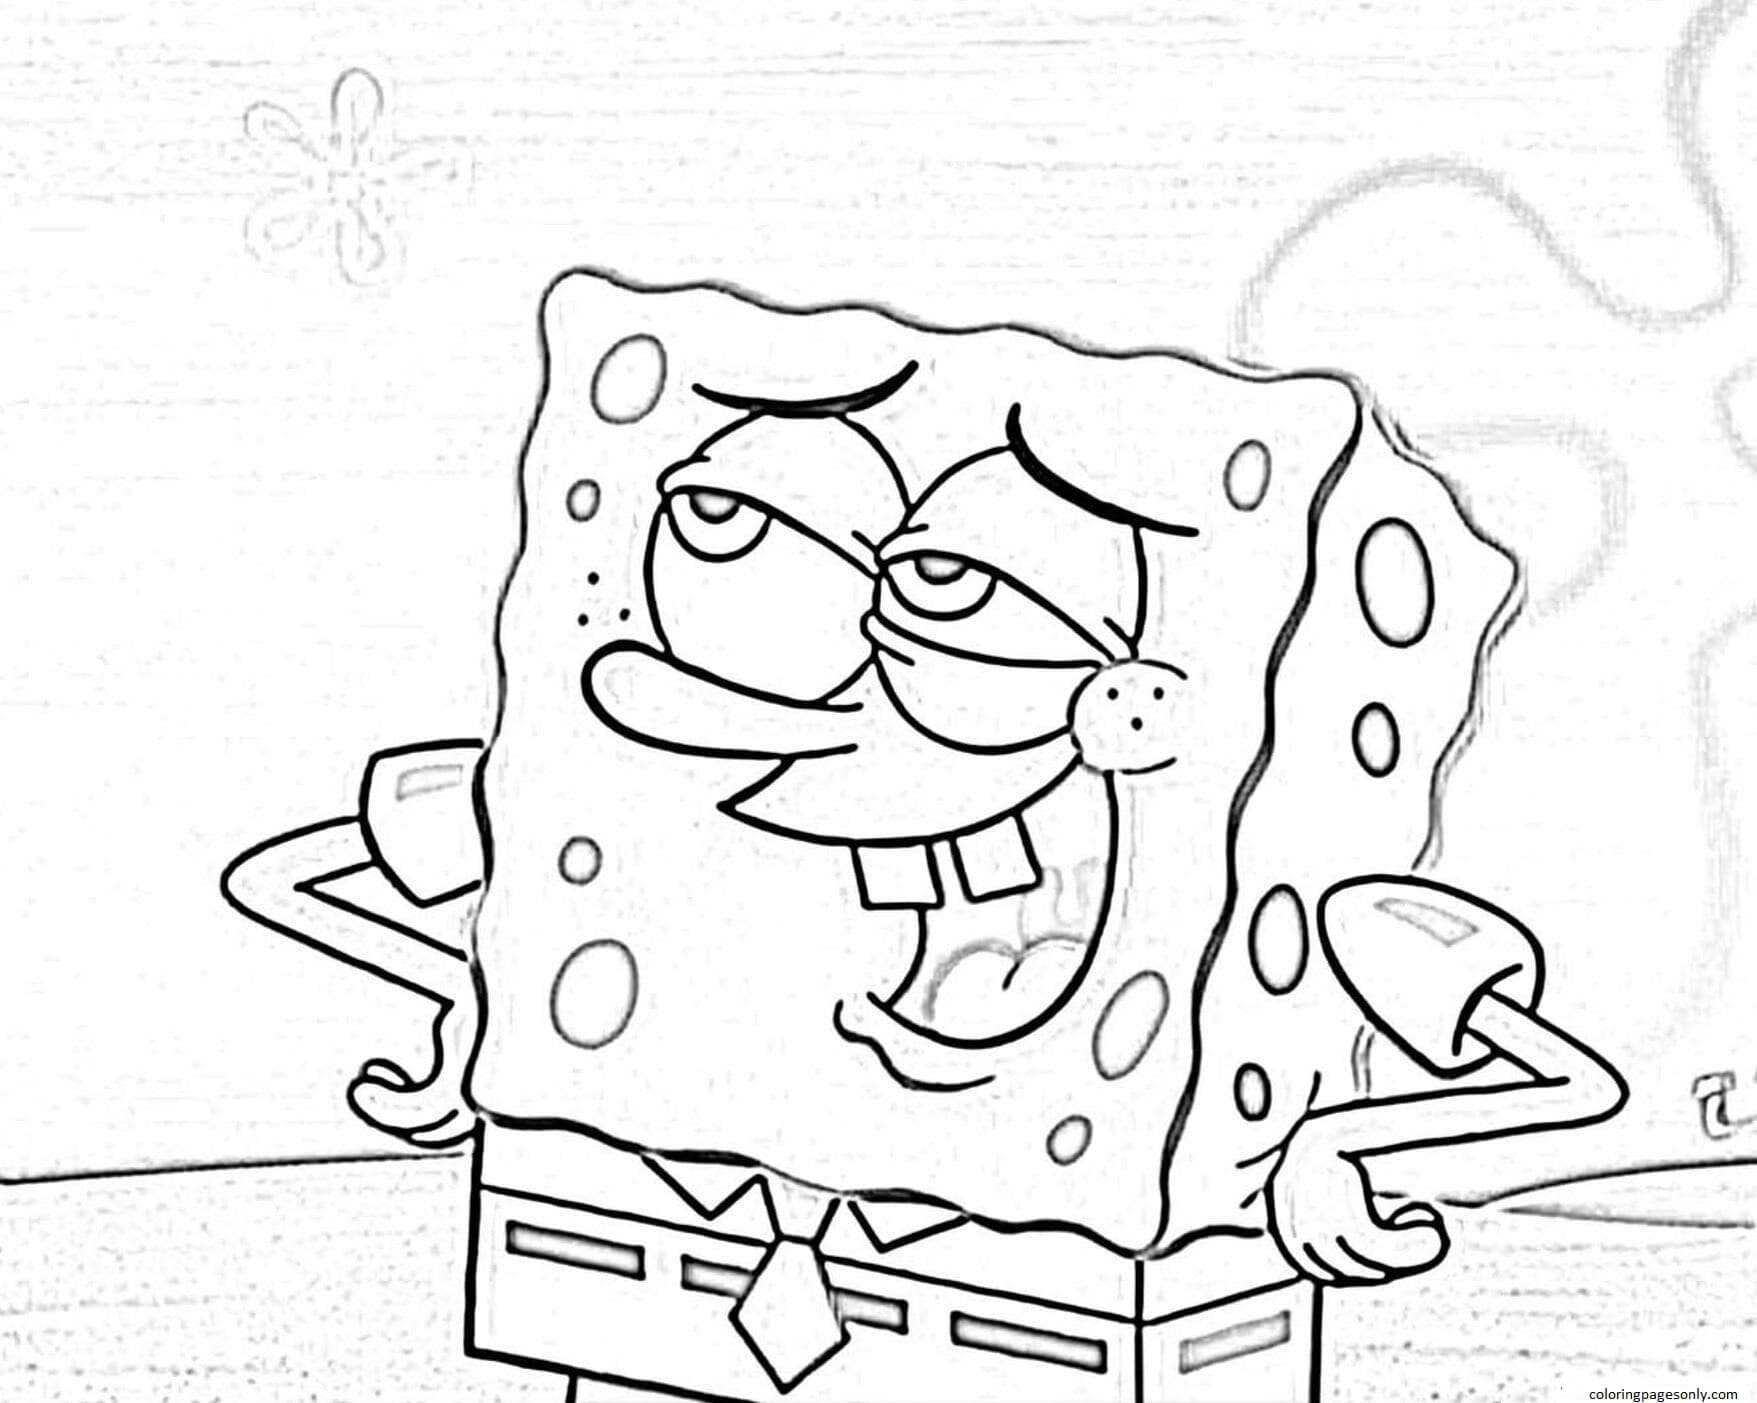 SpongeBob SquarePants 4 Coloring Pages